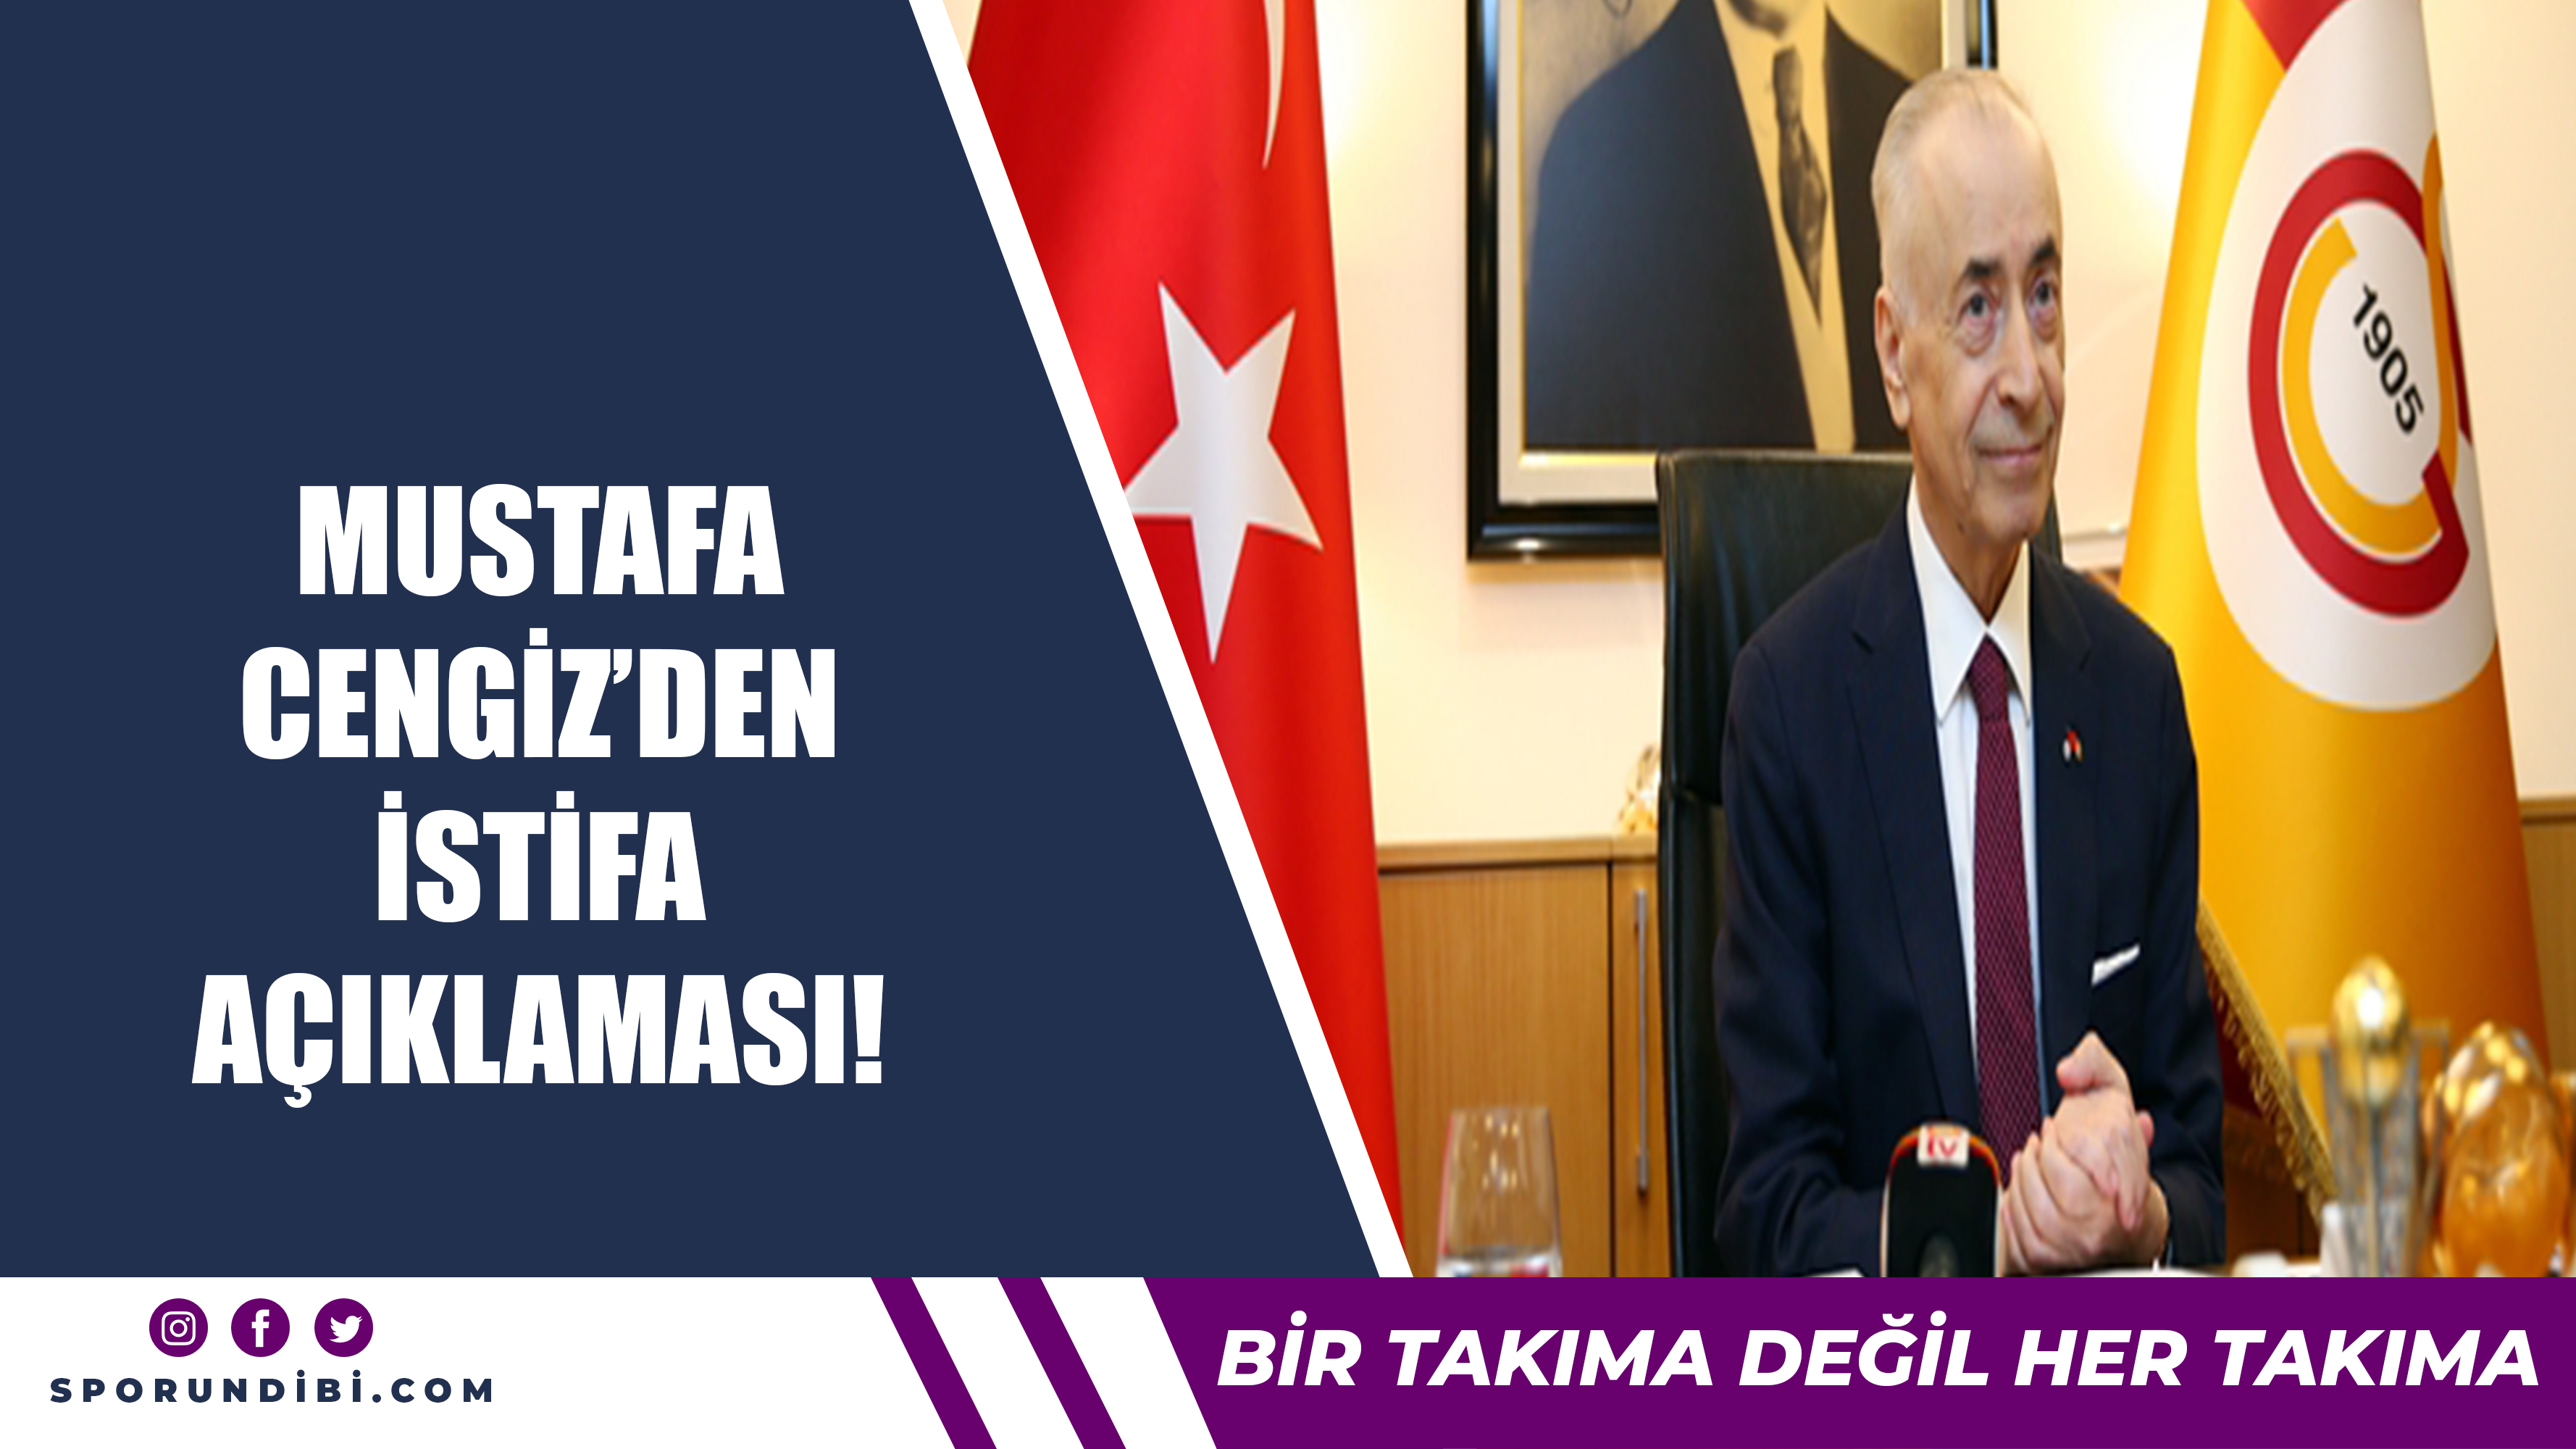 Mustafa Cengiz'den istifa açıklaması!